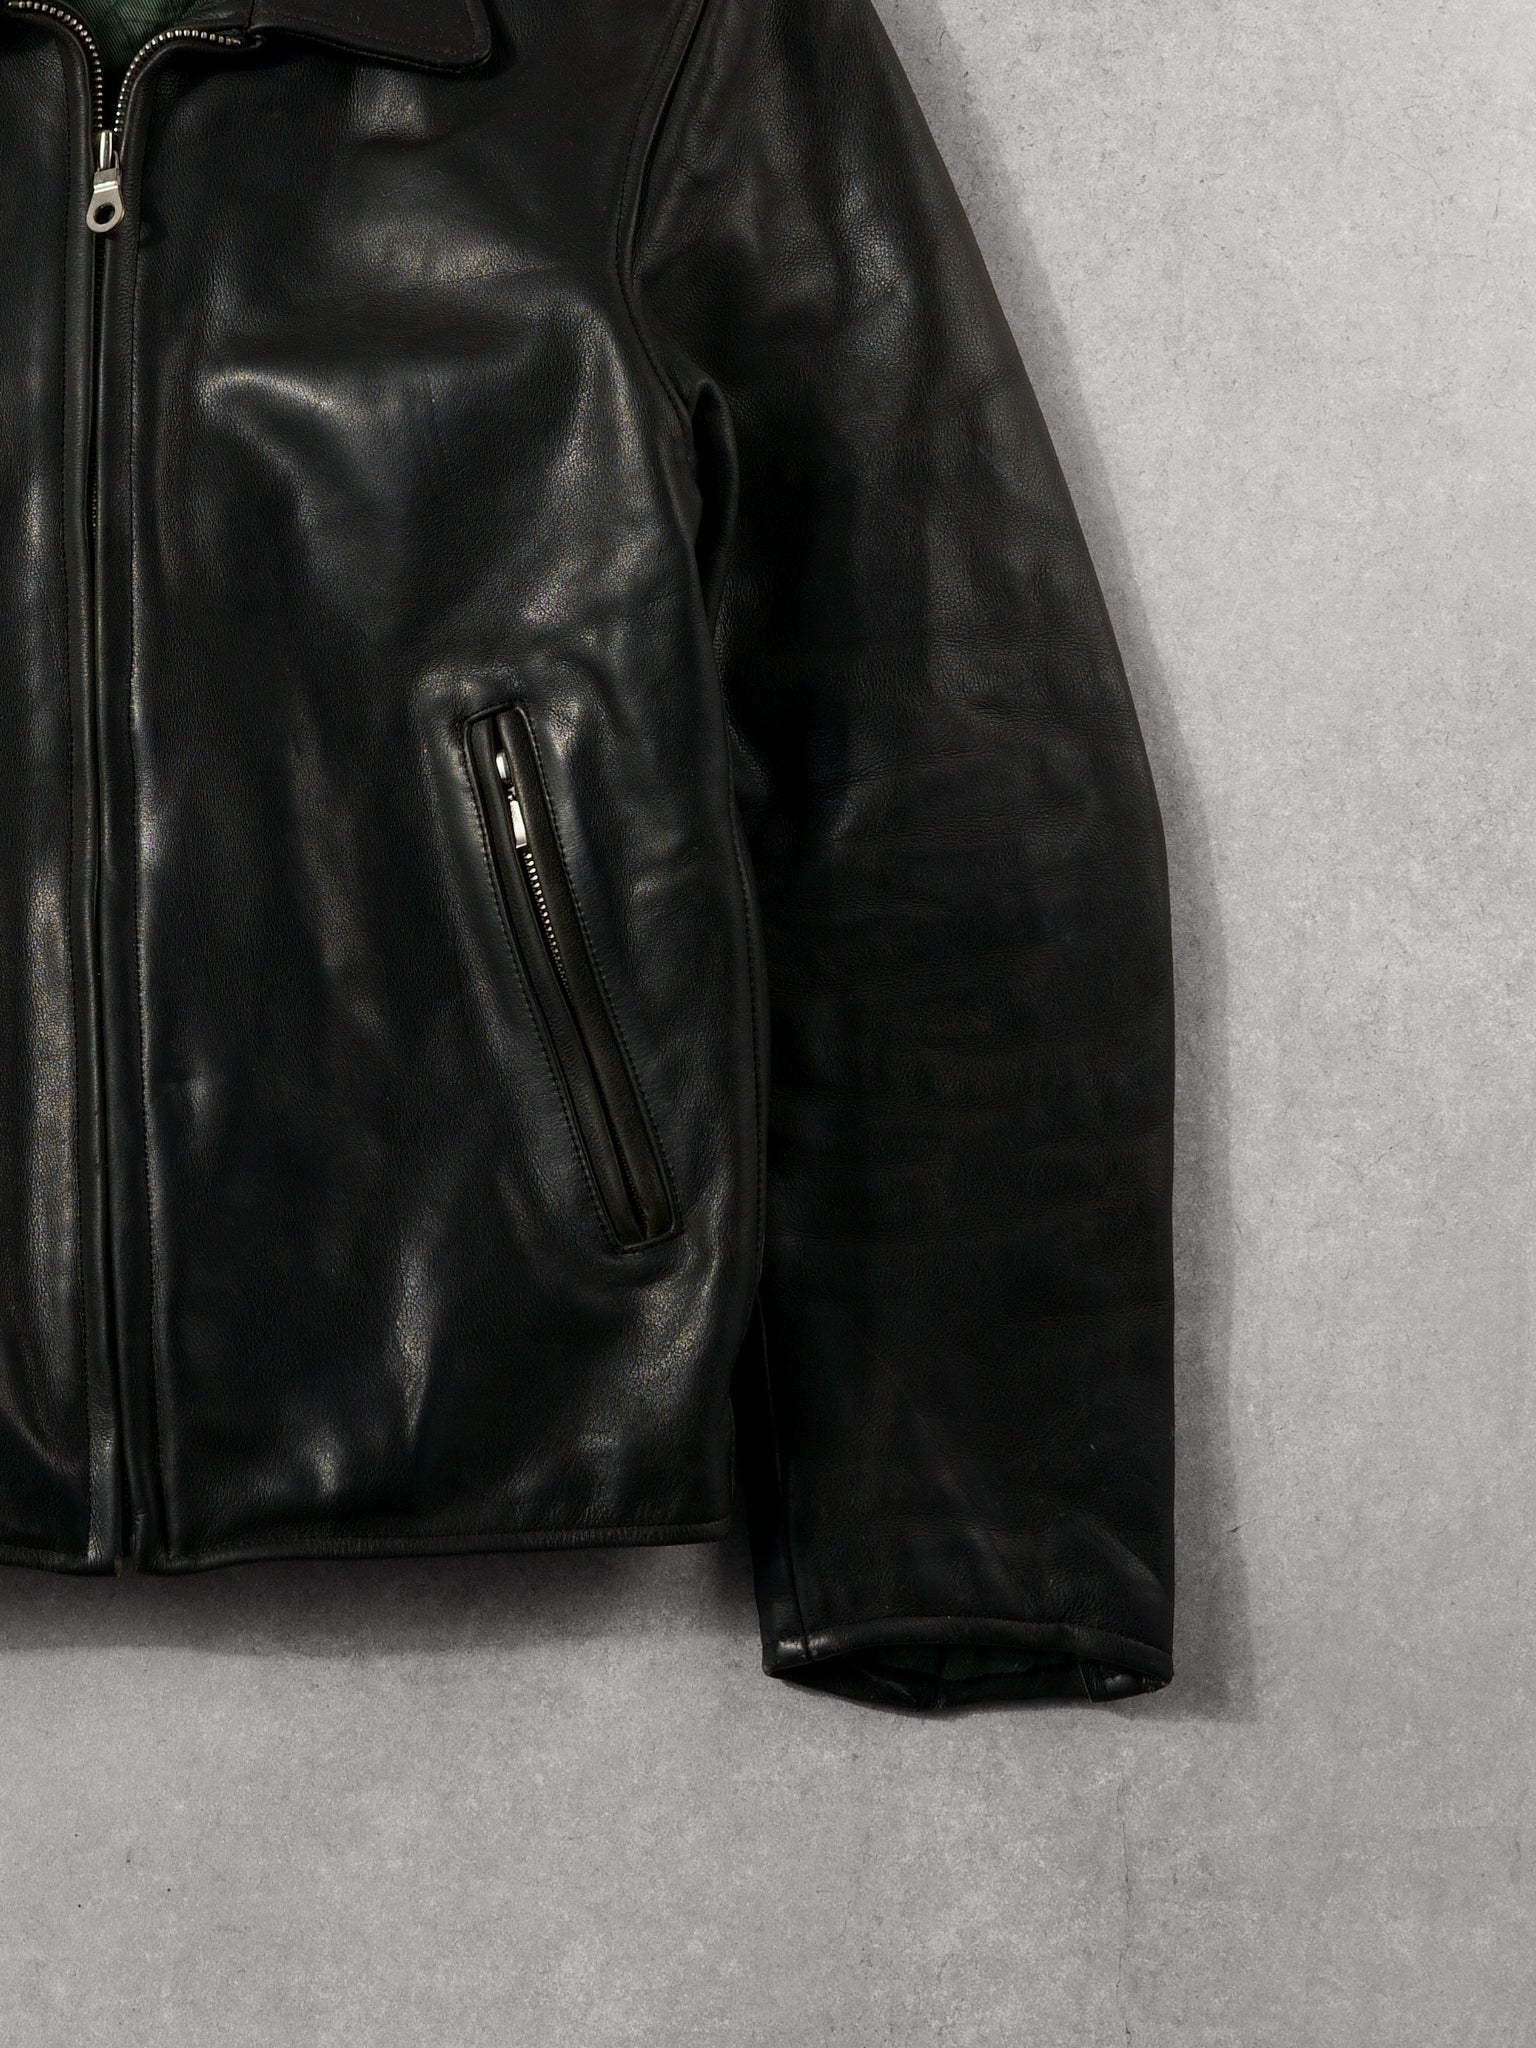 Vintage 90s Black Time & Tide Leather Collared Jacket (M)